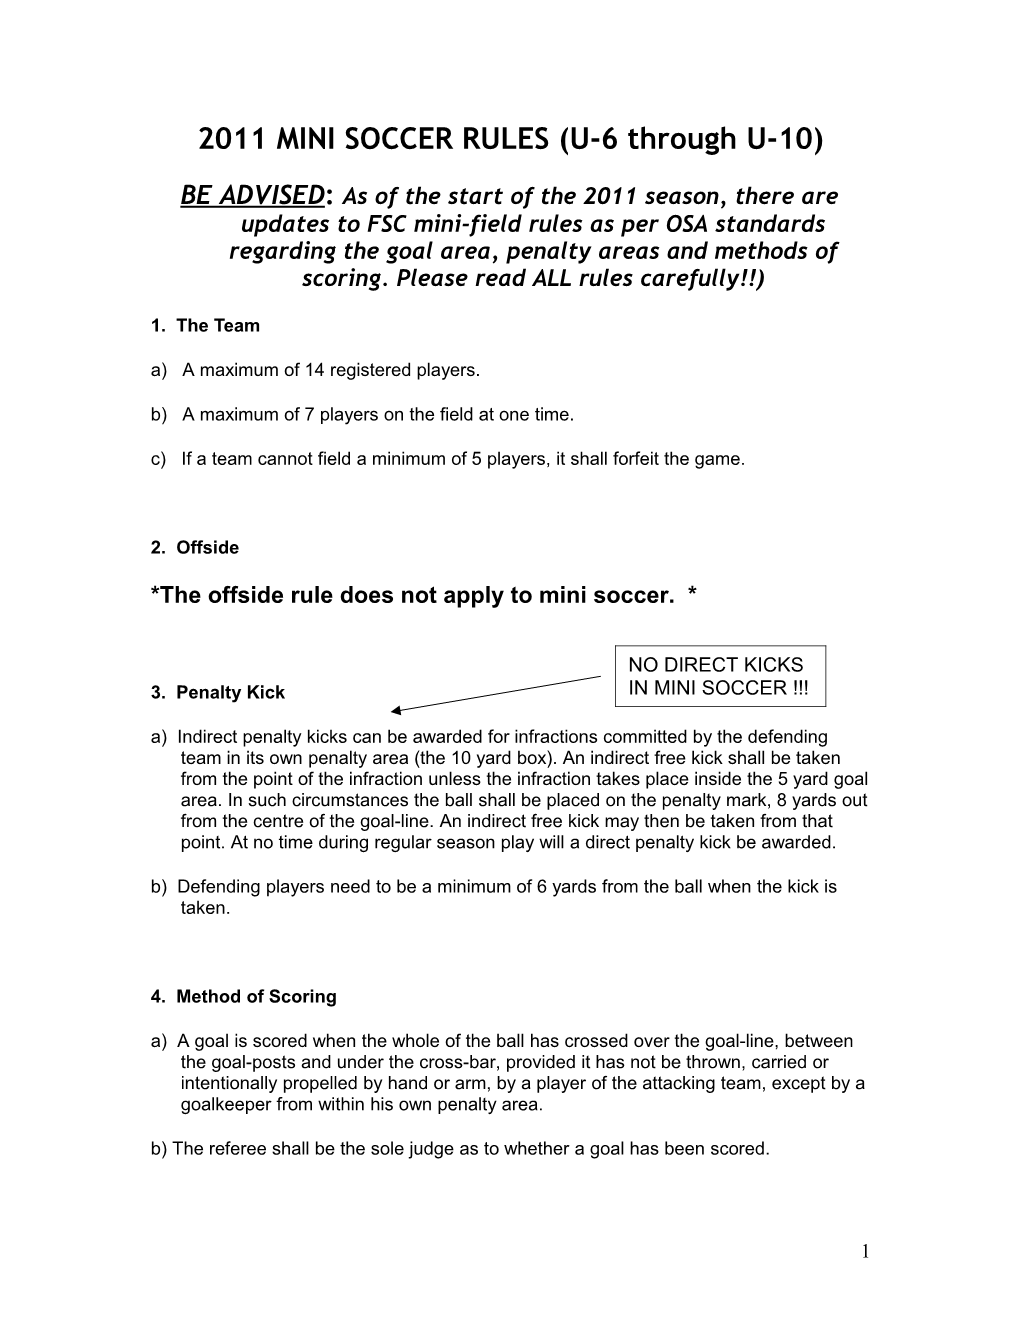 2007 MINI SOCCER RULES (U-5 Through U-10)